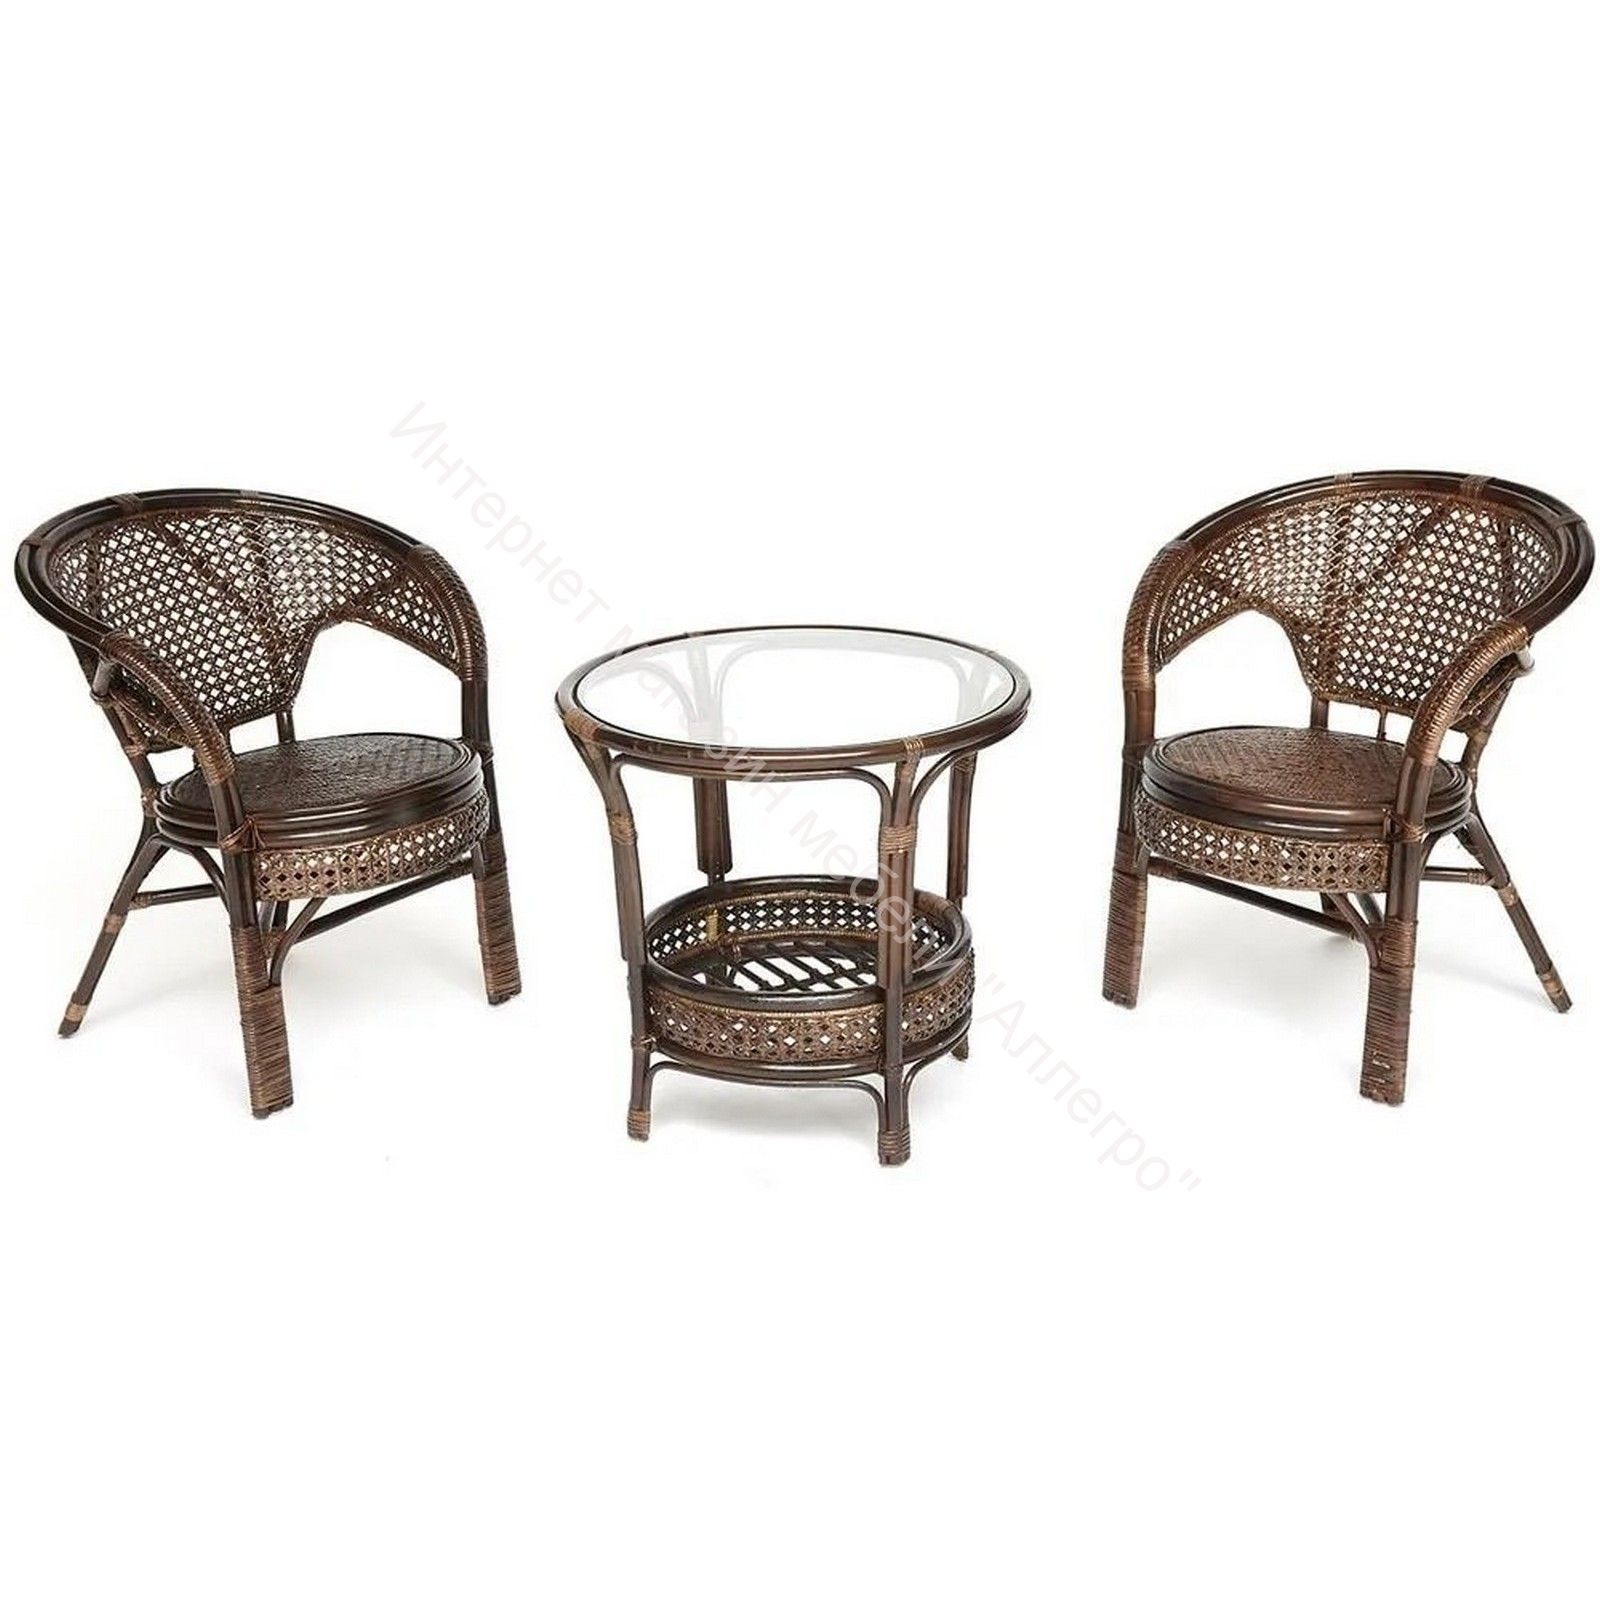 ТЕРРАСНЫЙ КОМПЛЕКТ "PELANGI" (стол со стеклом + 2 кресла) без подушек, ротанг, walnut (грецкий орех)